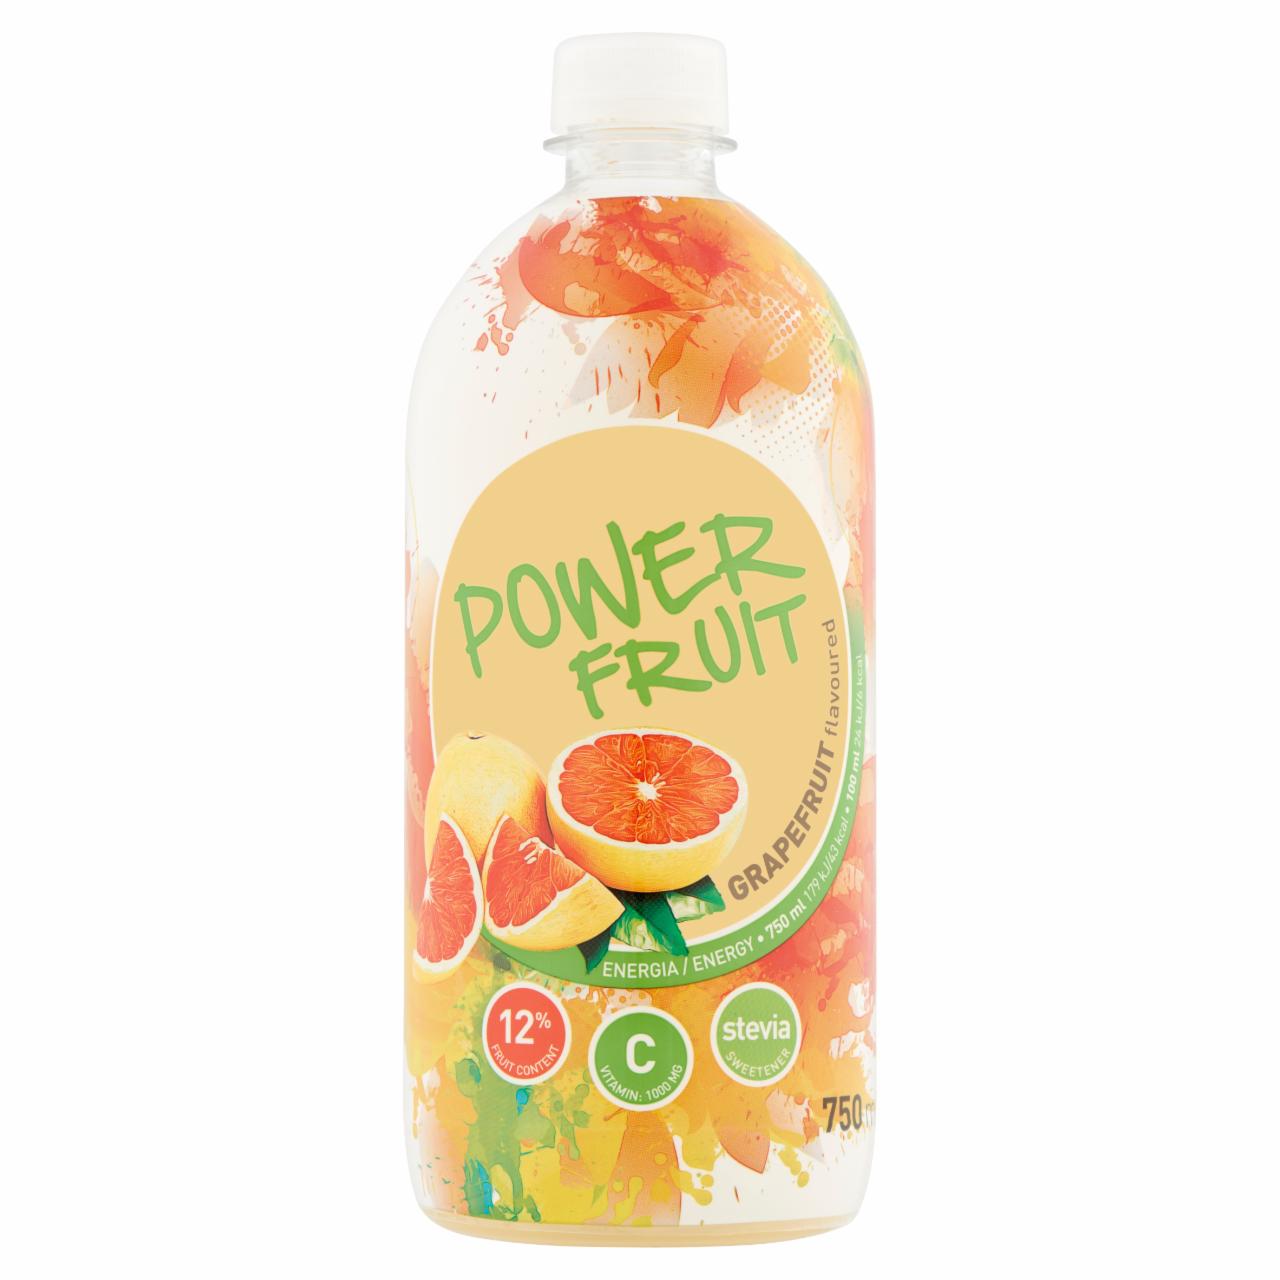 Képek - Power Fruit grapefruit ízű, forrásvíz alapú, energiaszegény gyümölcsital édesítőszerekkel 750 ml